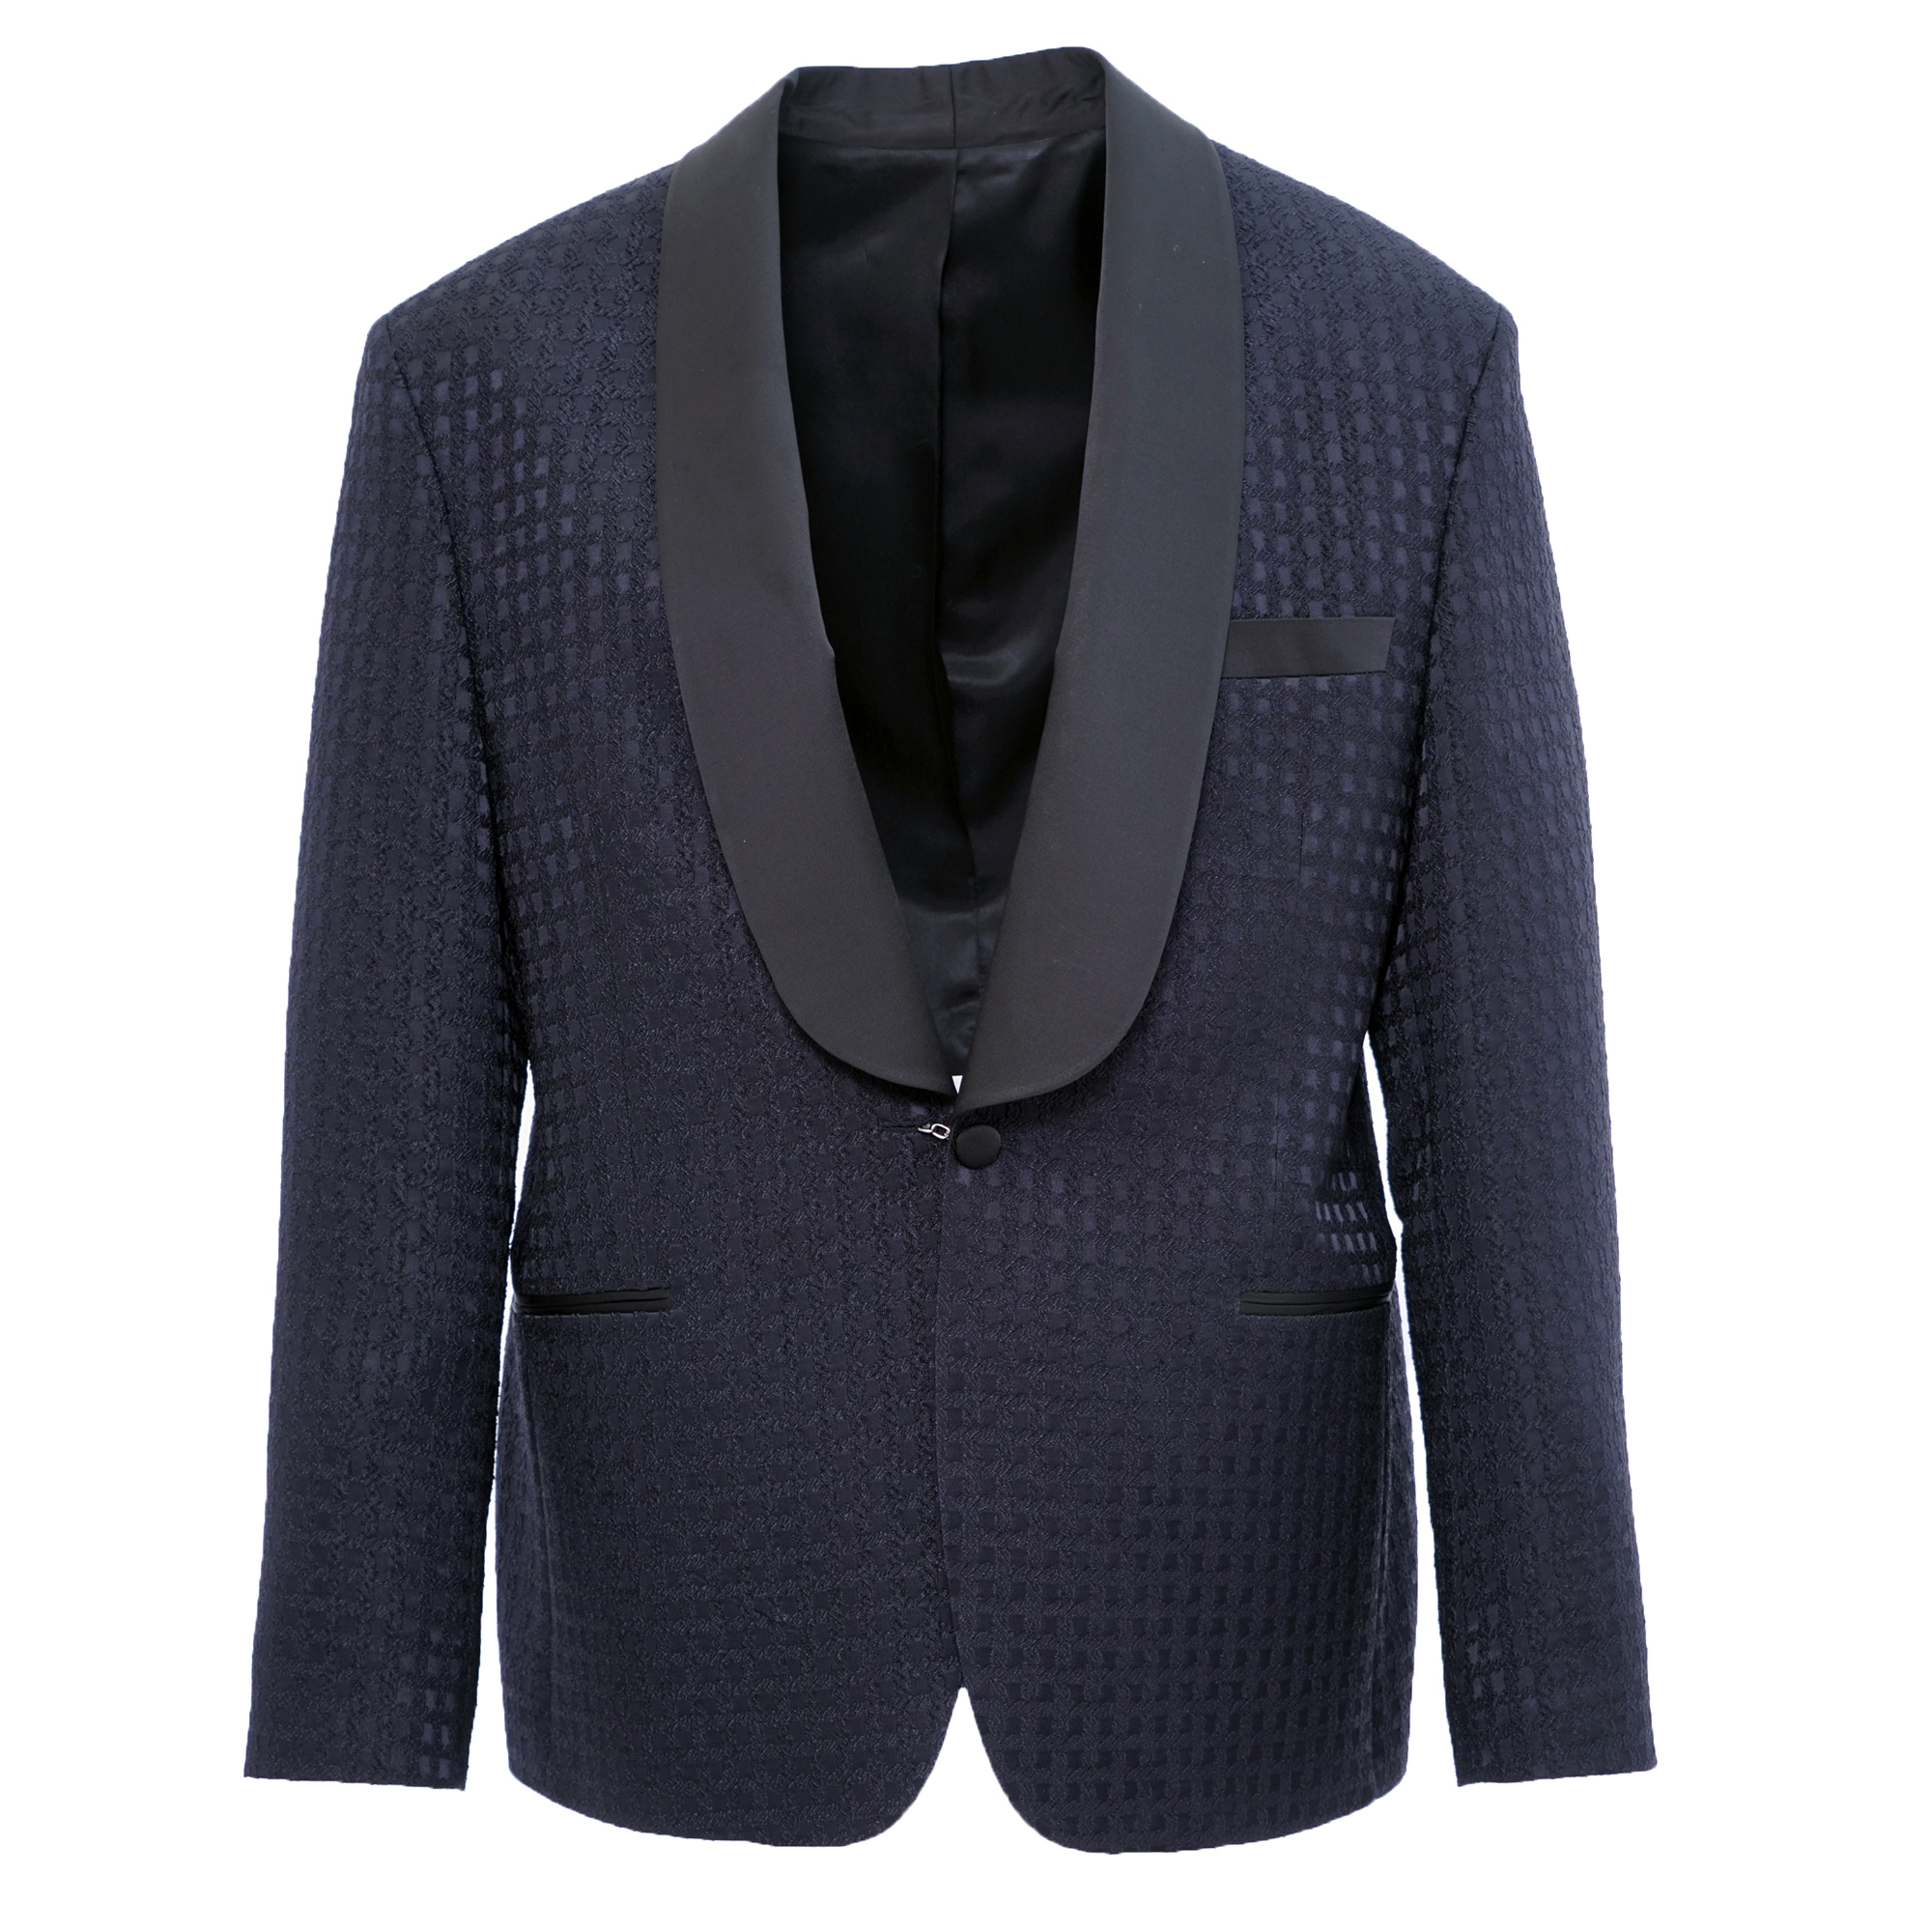 Blue Square Tuxedo Jacket - Esclot Suit Tailors London